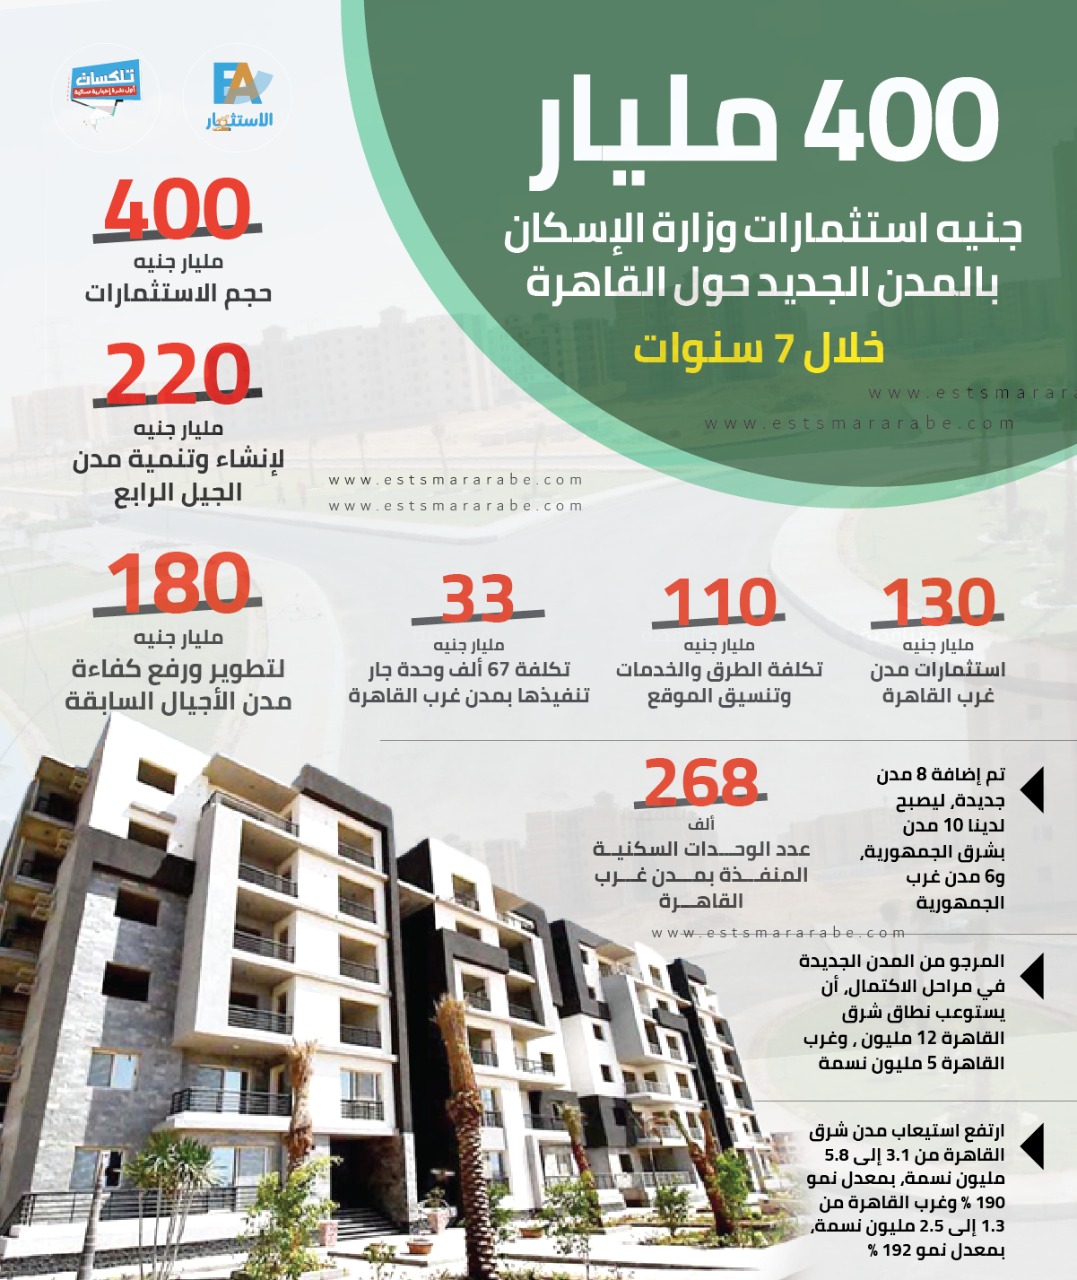 إنفوجرافيك || 400 مليار جنيه استثمارات وزاة الإسكان بالمدن الجديدة حول القاهرة خلال 7 سنوات